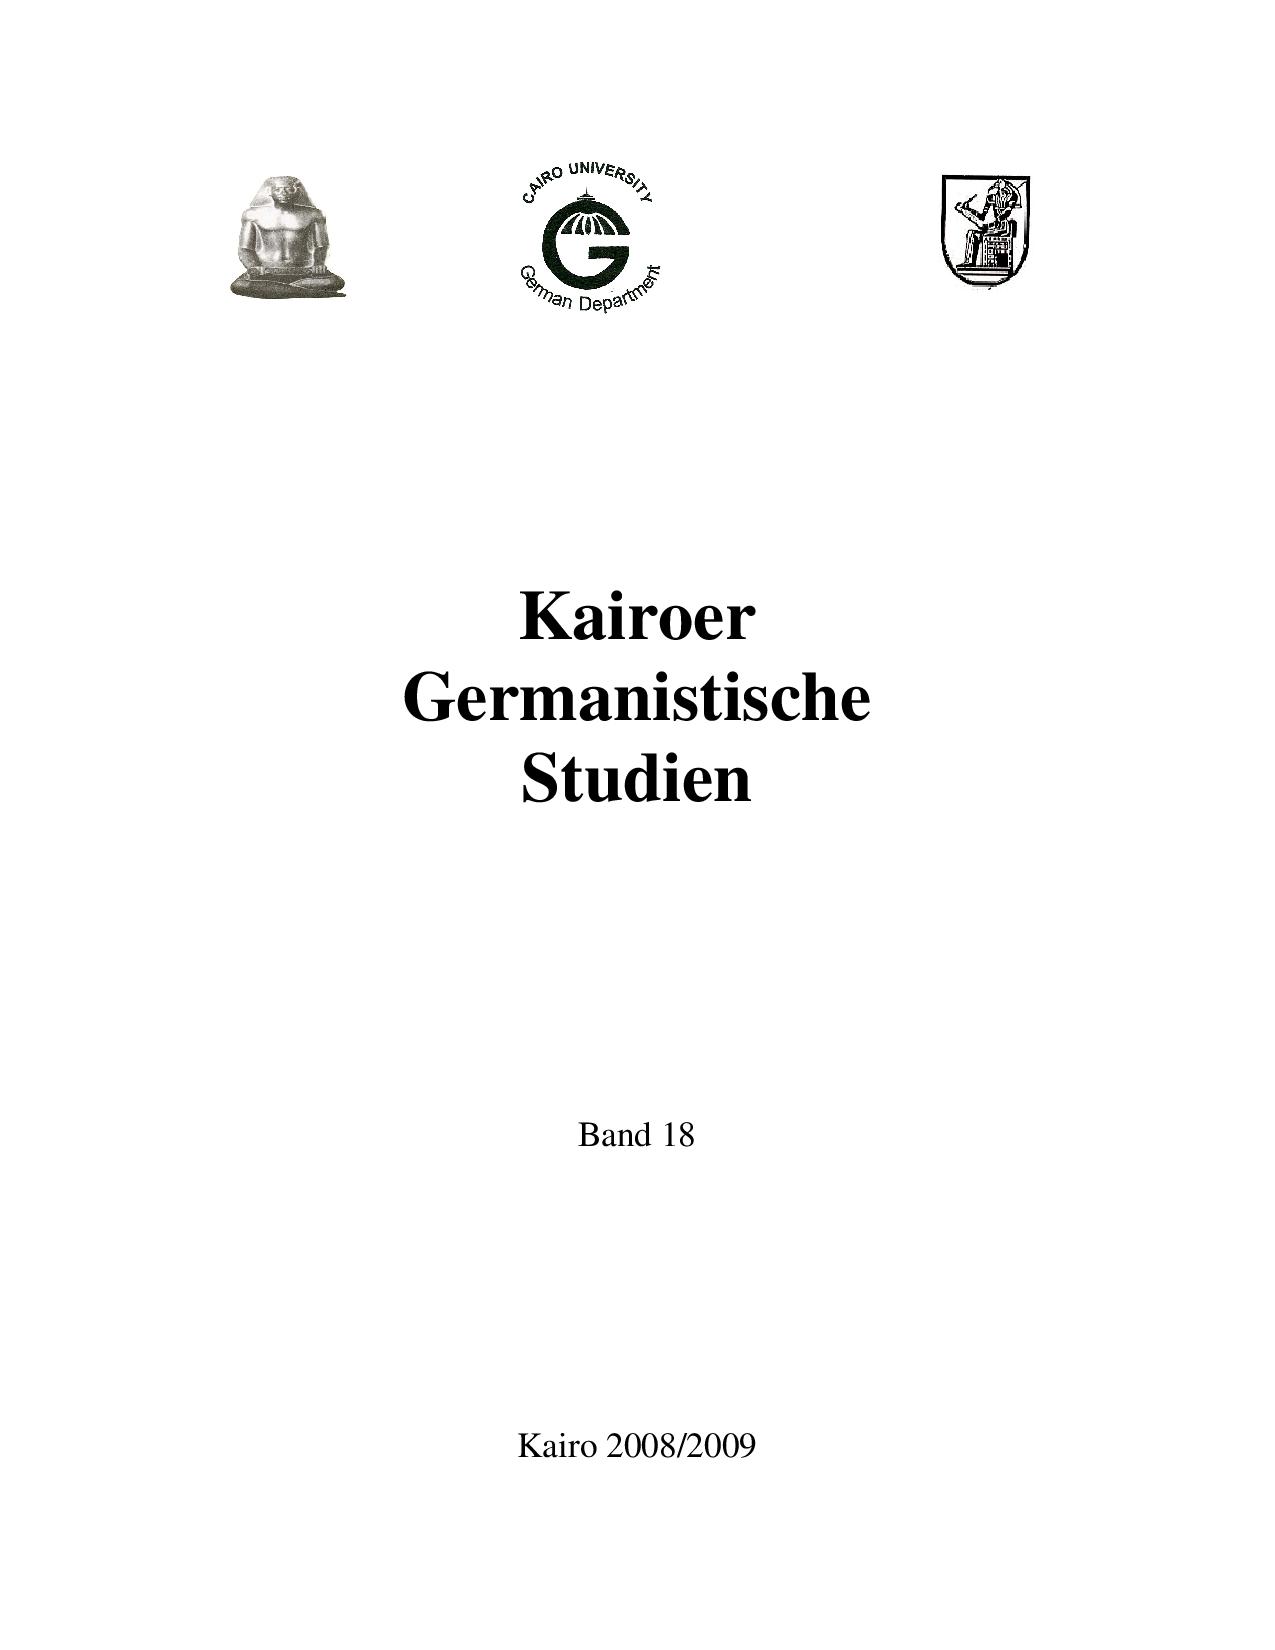 Kairoer Germanistische Studien